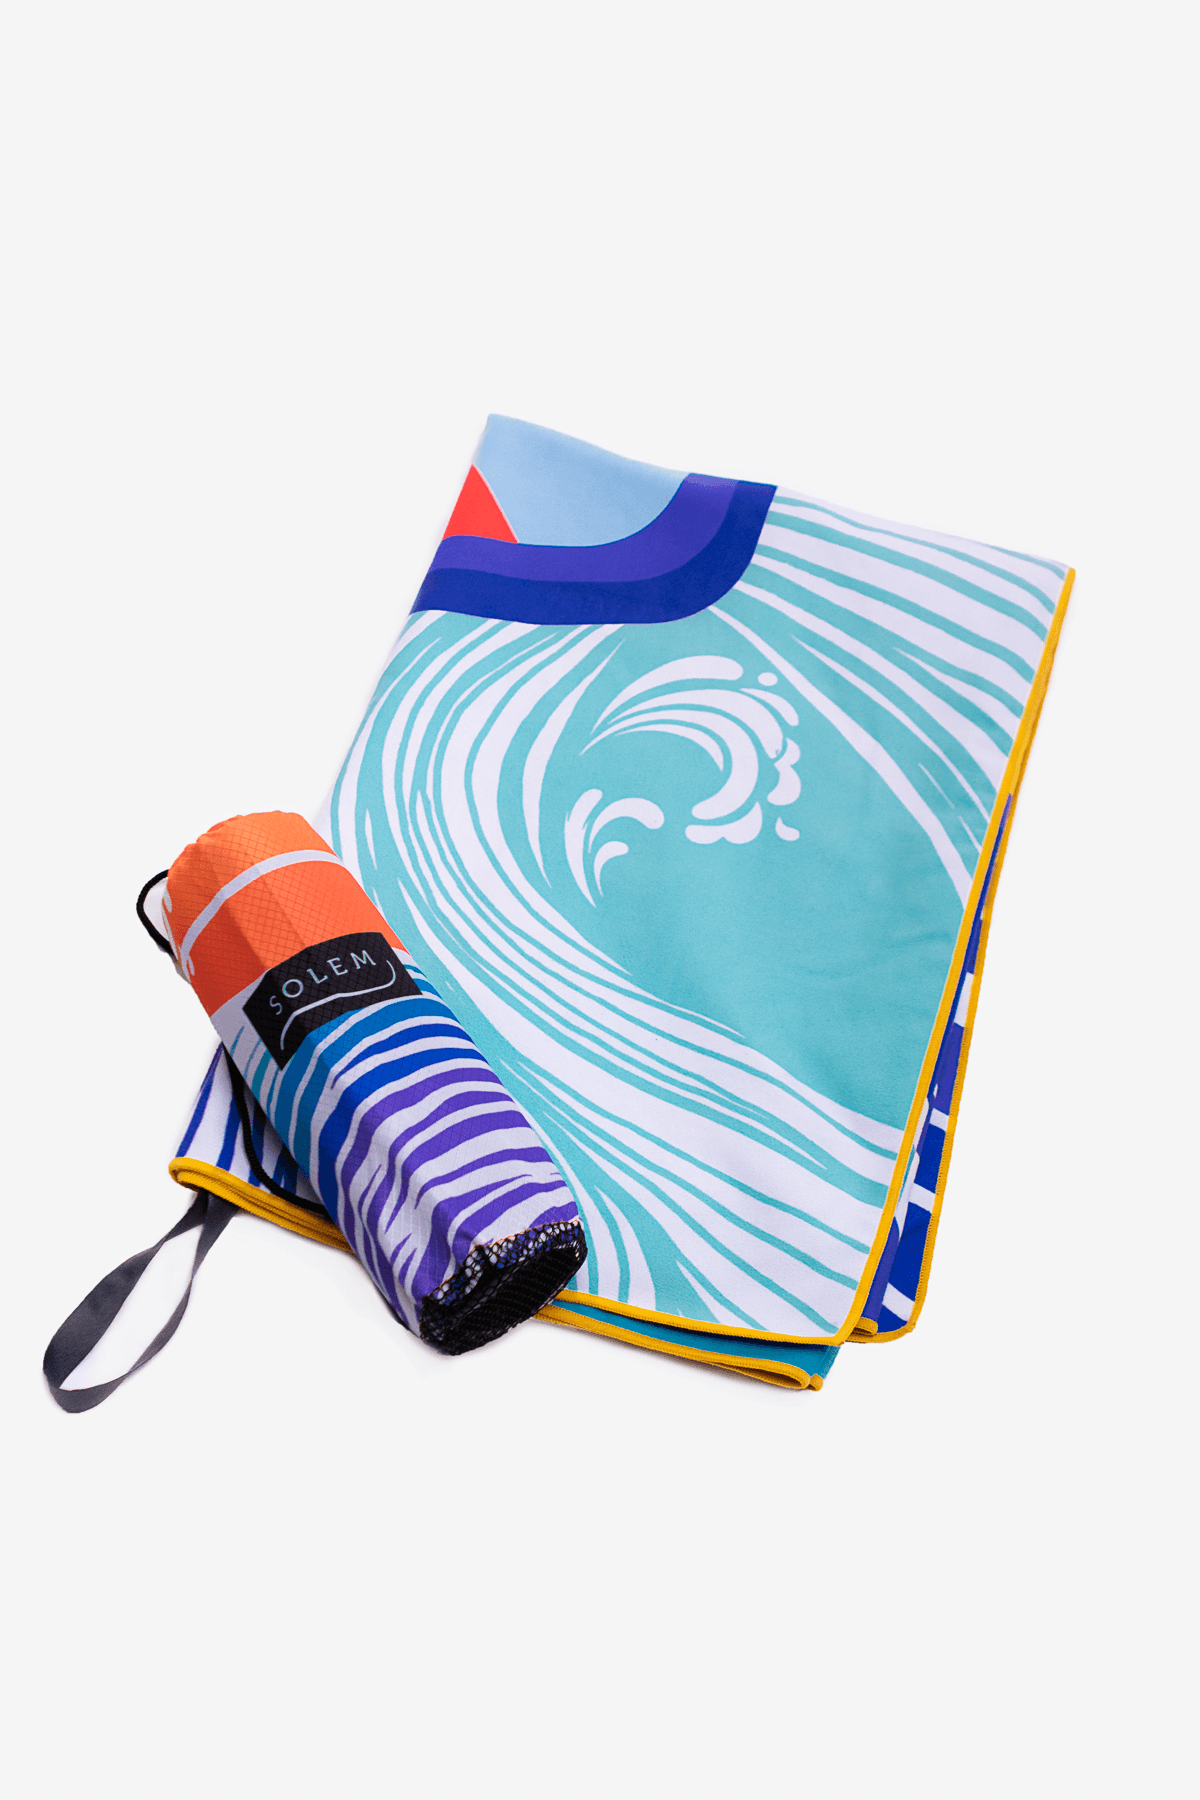 serviette-de-plage-microfibre-solem-pochette-surf - Serviette de plage La surf - Solem